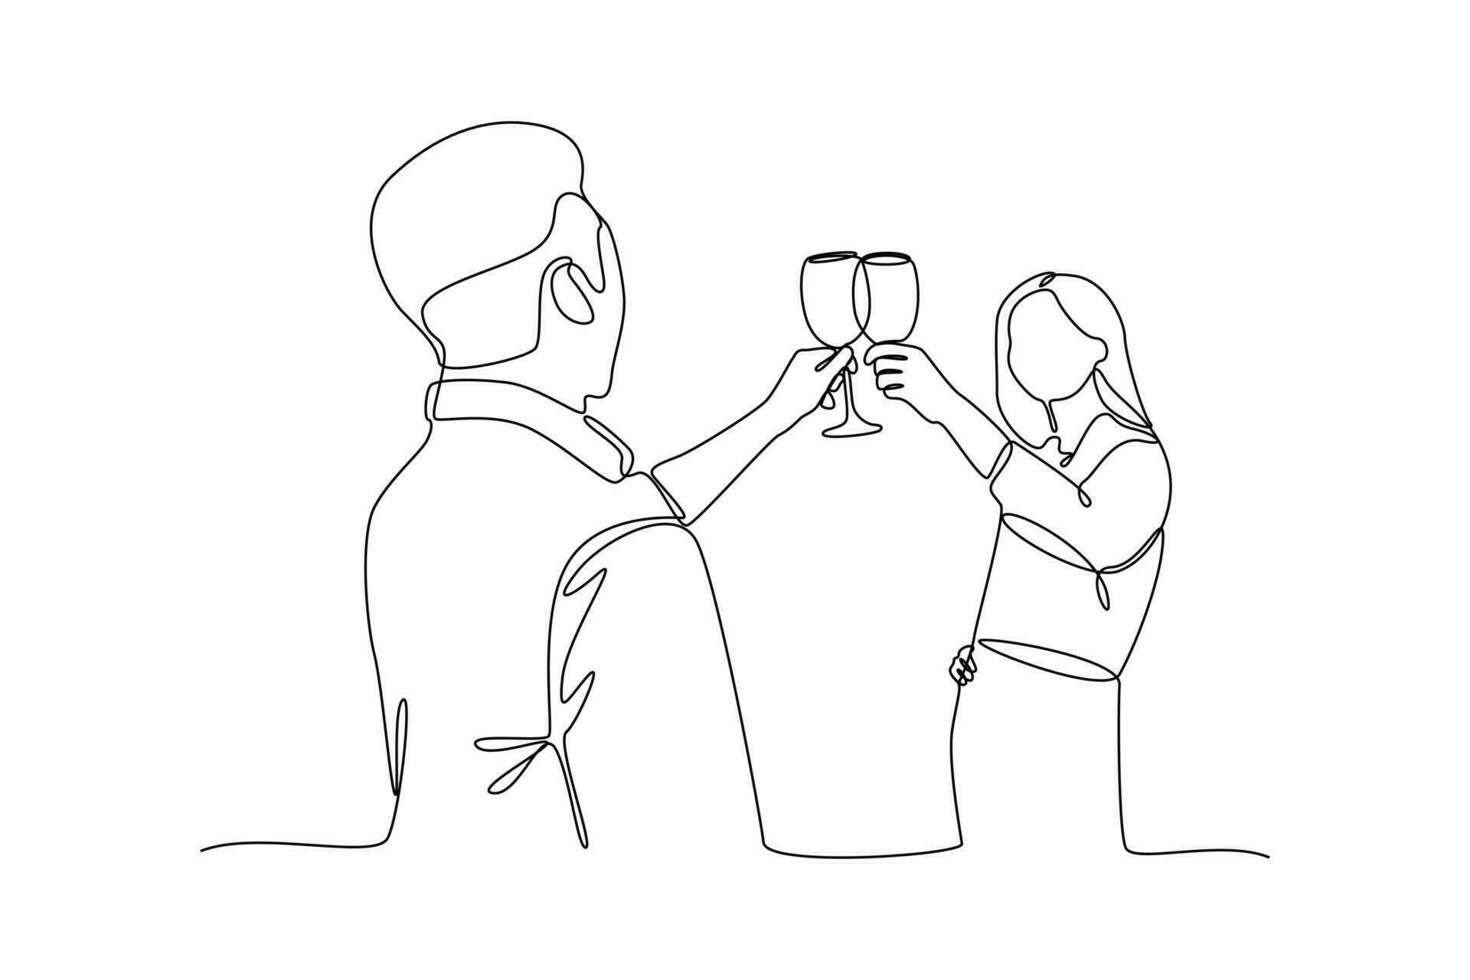 einer kontinuierlich Linie Zeichnung von glücklich Menschen Klirren Brille und Trinken beim feierlich Party. freunde Konzept. Gekritzel Vektor Illustration im einfach linear Stil.